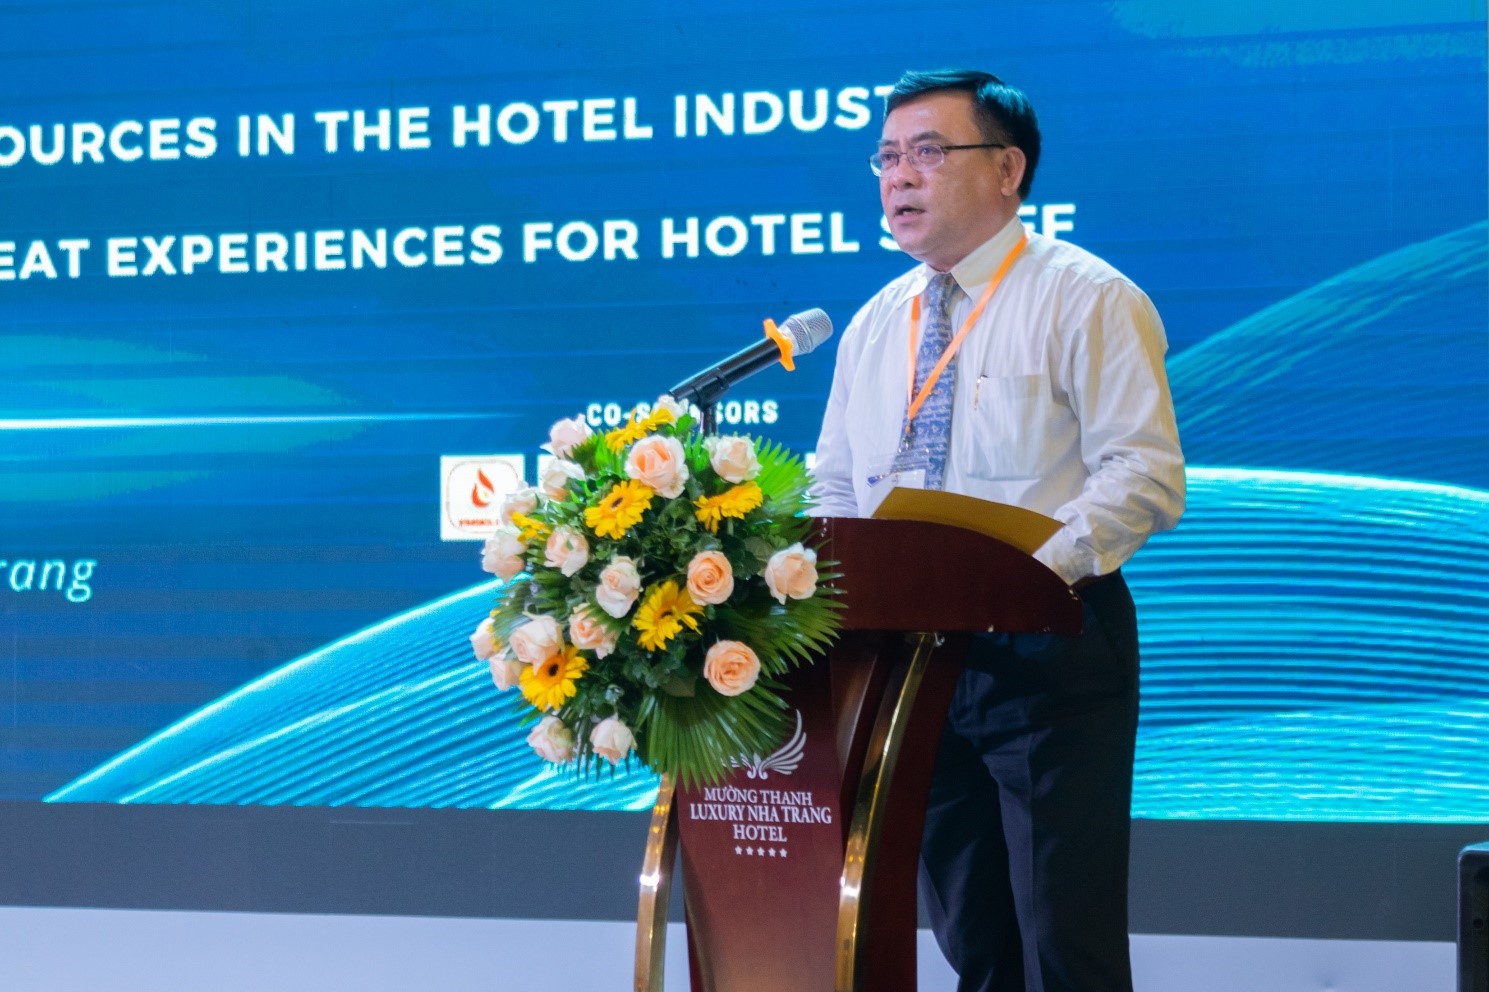 Ông Phan Đình Phùng - Phó Giám đốc Sở Du lịch Khánh Hòa chia sẻ về thực trạng và giải pháp thu hút nguồn nhân lực du lịch Khánh Hòa